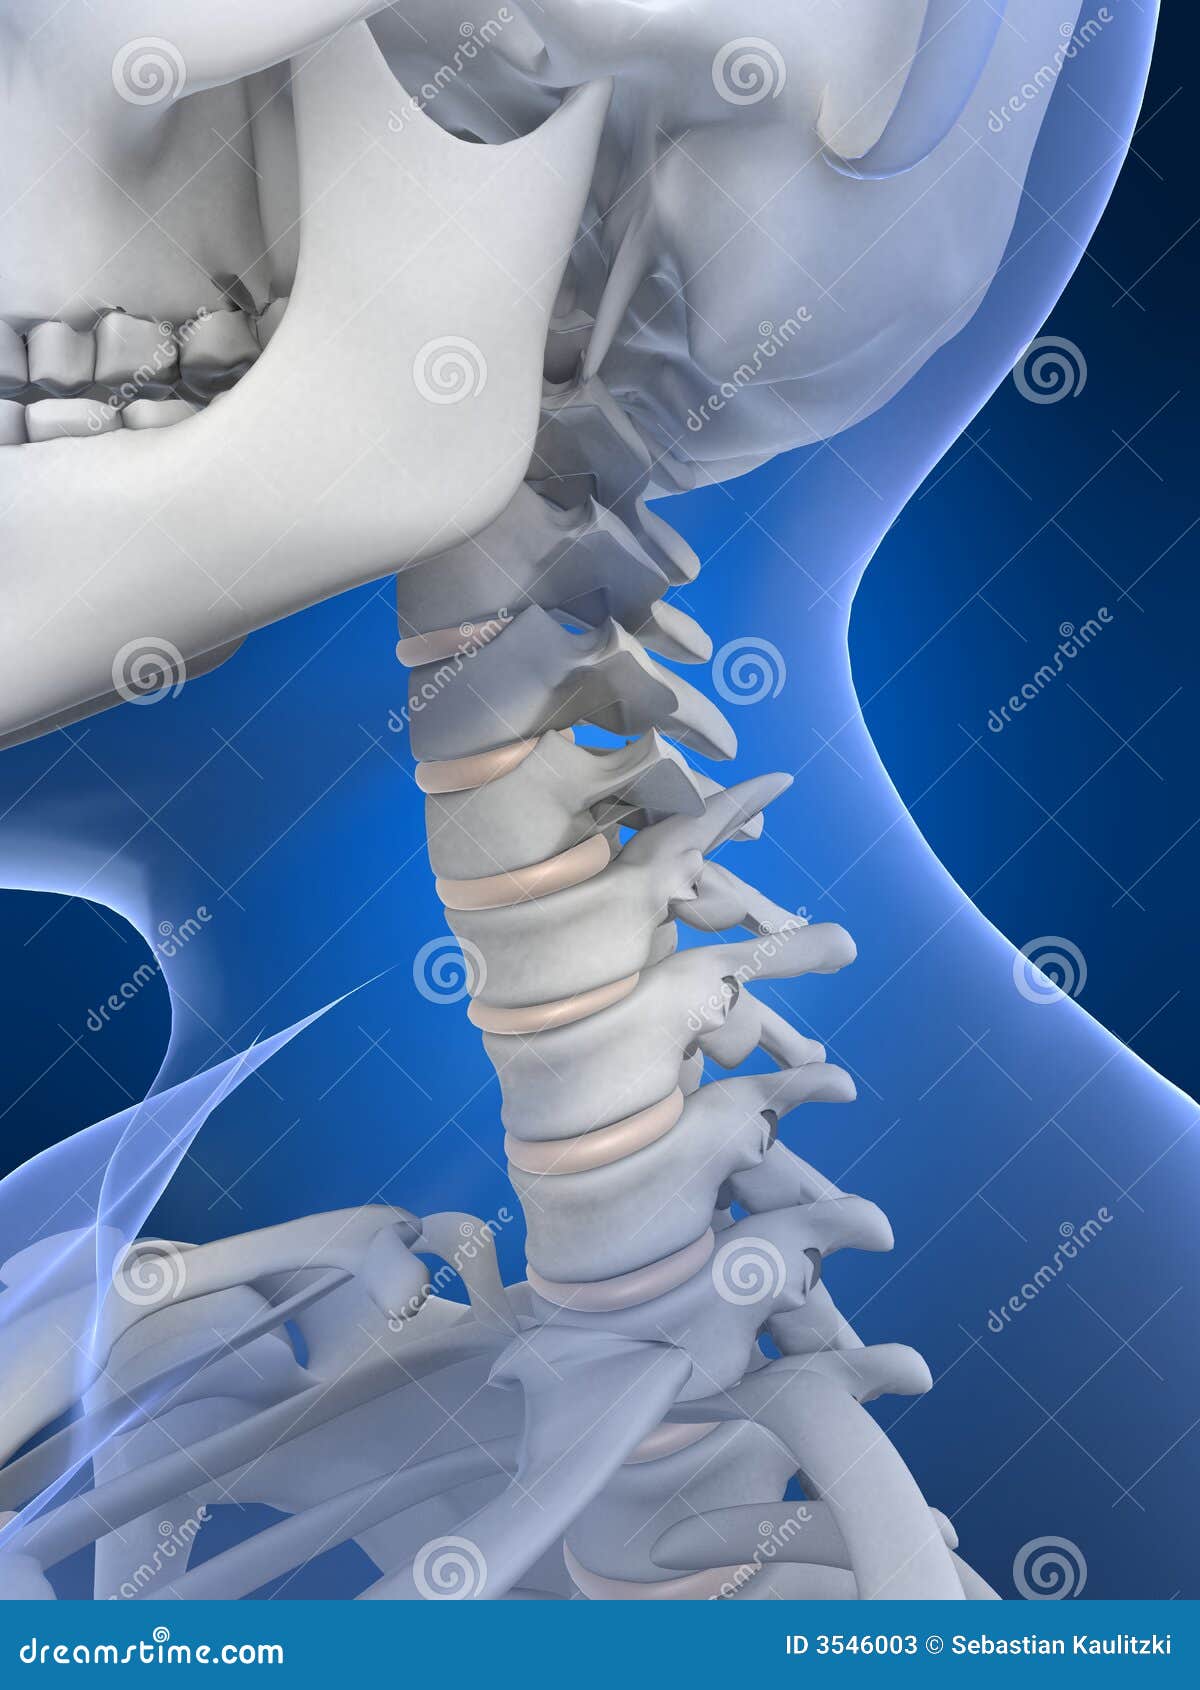 Skeletal neck stock illustration. Illustration of biological - 3546003